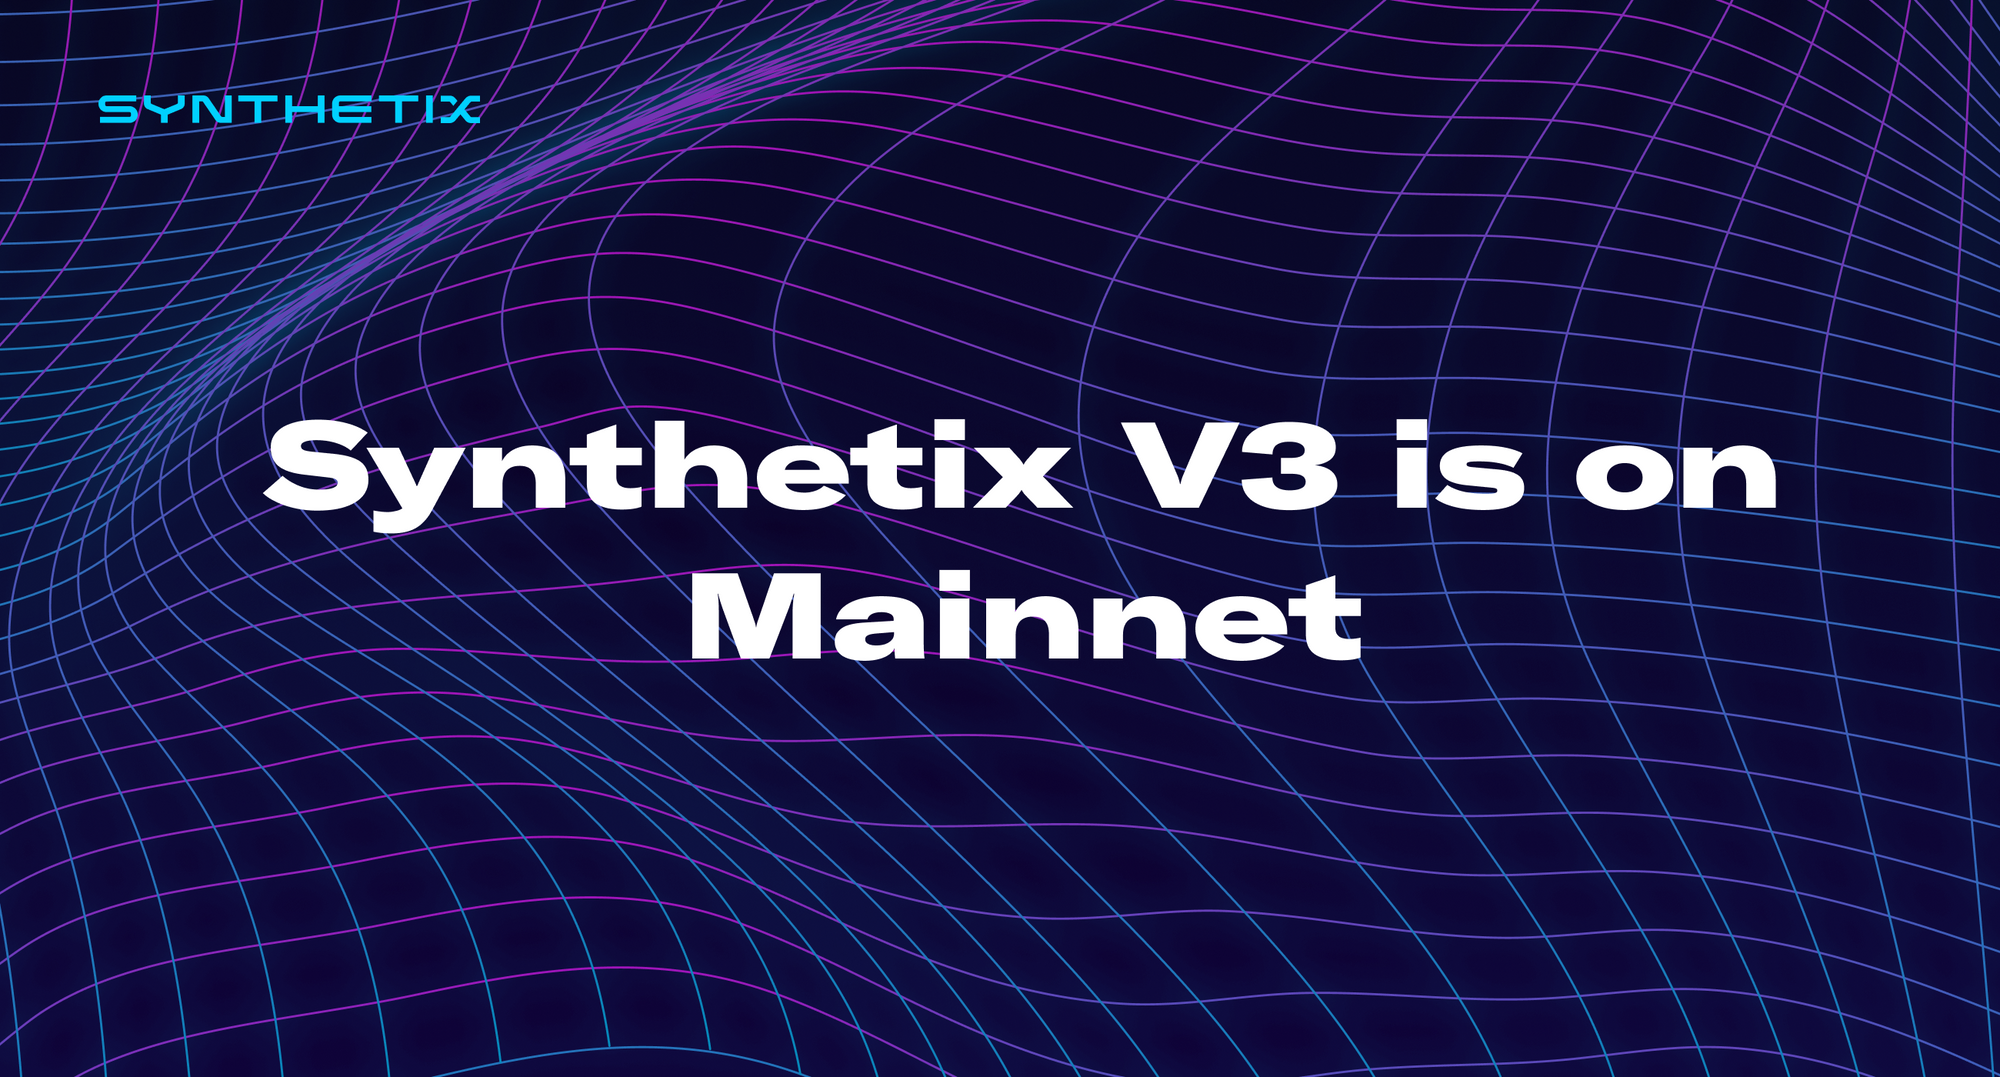 Synthetix V3 is on Mainnet